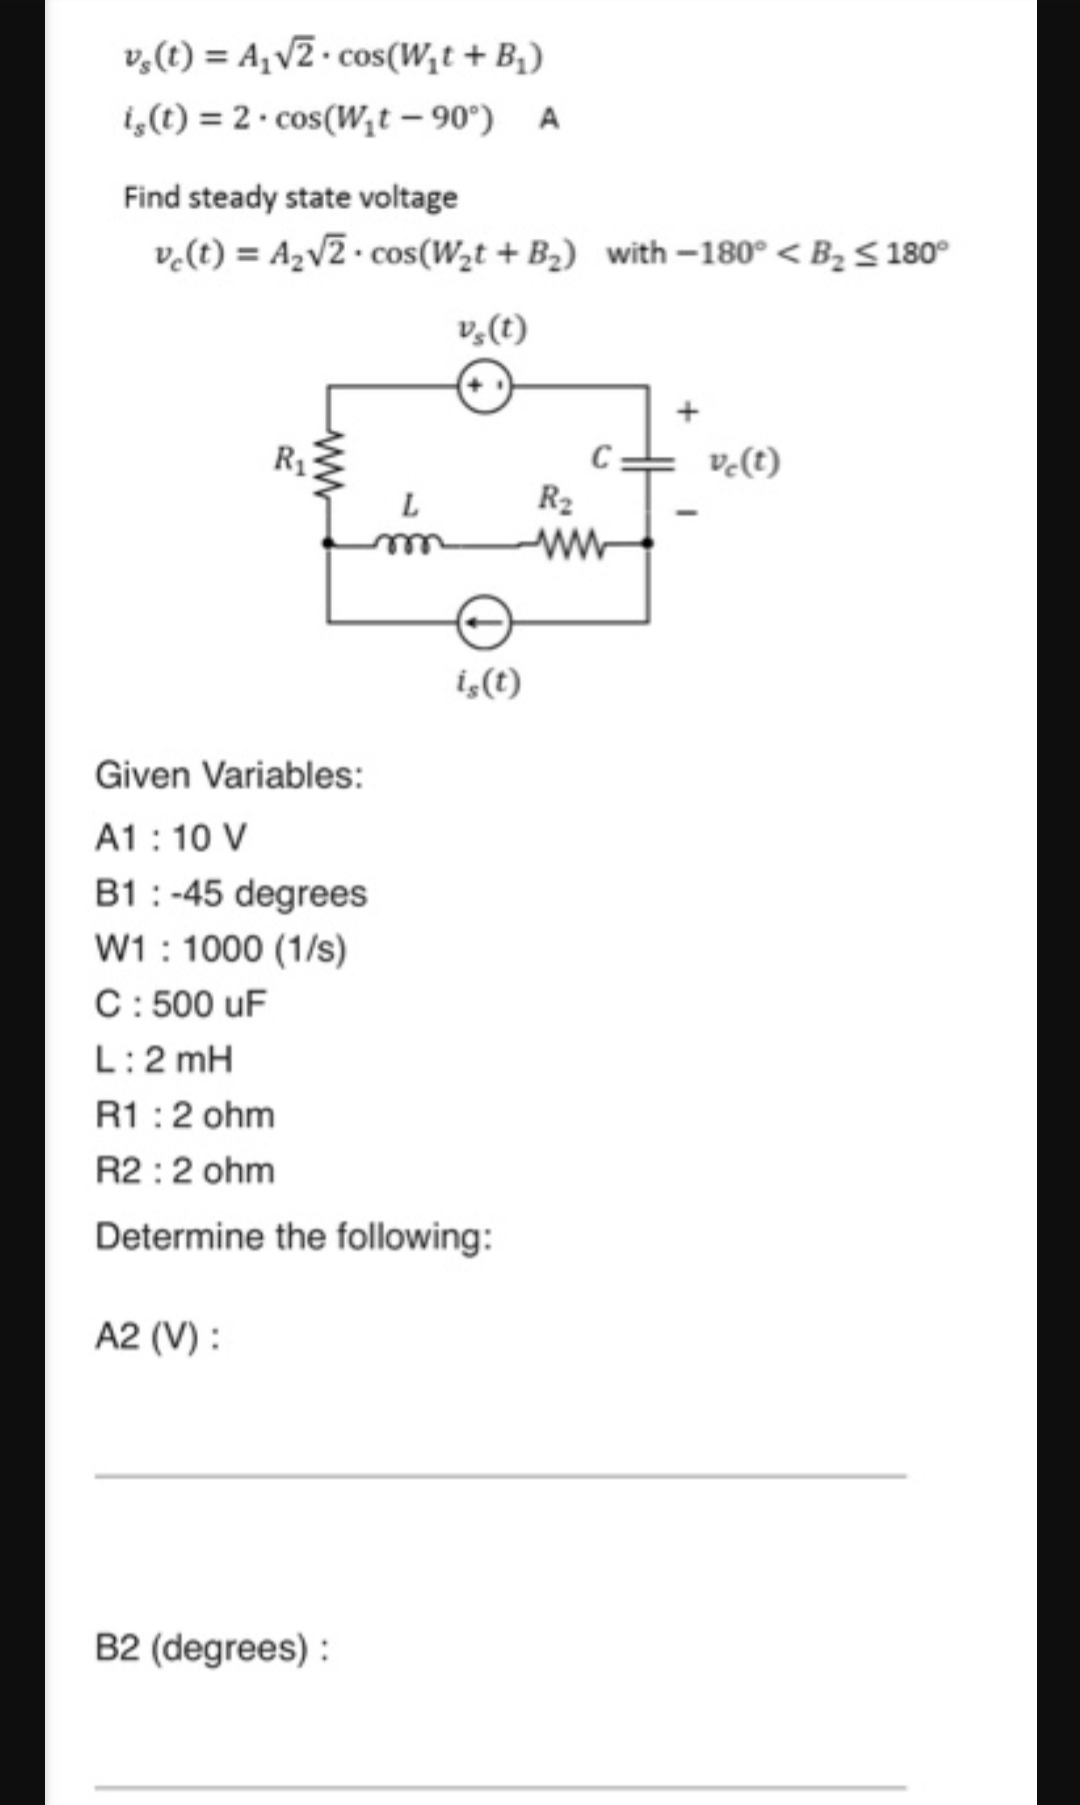 (t) = A1V2. cos(wt + B)
2. cos(Wt- 90)
t)
A
Find steady state voltage
A2v2. cos(W2t + B2) with -180°< B2S180
Pe(t)
(t)
C
ve(t)
R2
ww
L
i(t)
Given Variables:
A1 10 V
B1 -45 degrees
W1 1000 (1/s)
C: 500 uF
L: 2 mH
R1: 2 ohm
R2 : 2 ohm
Determine the following :
A2 (V)
B2 (degrees)
RI
